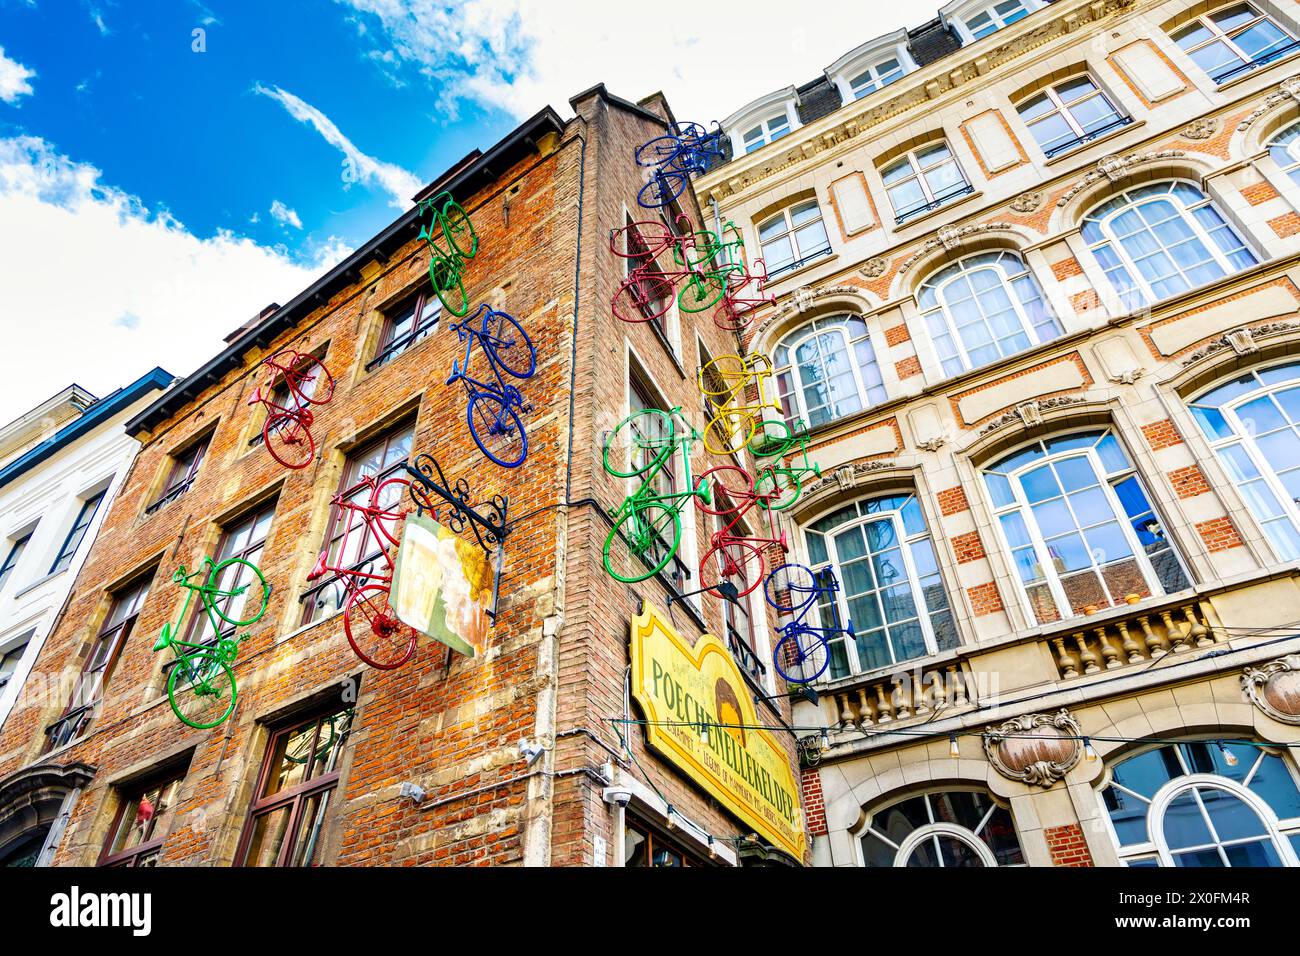 Biciclette colorate sulla facciata dell'edificio Poechenellekelder, Bruxelles, Belgio Foto Stock